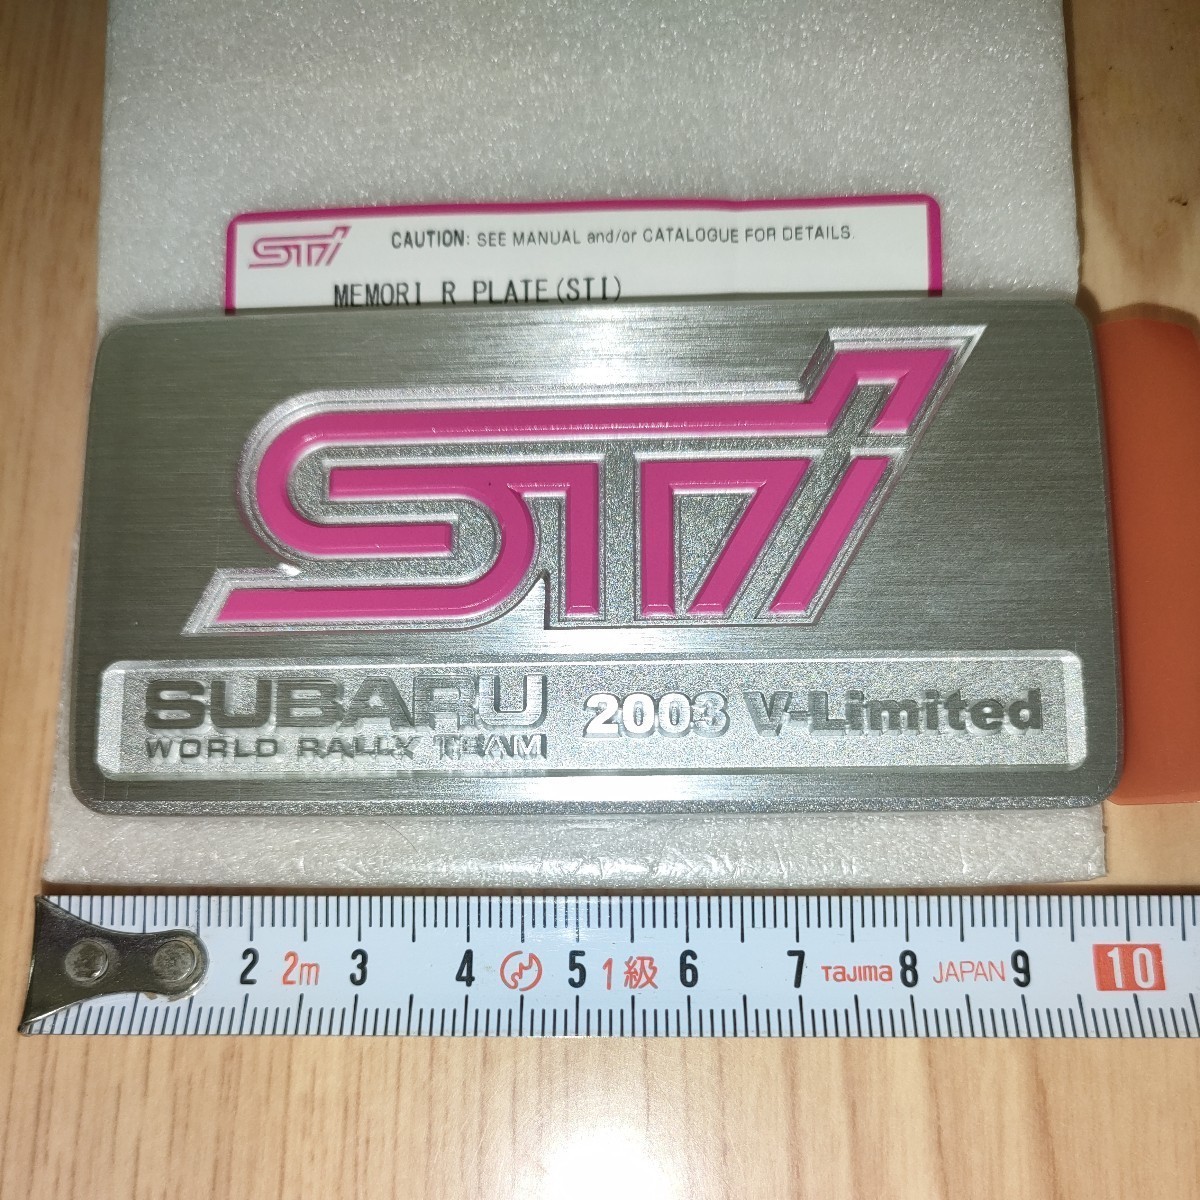  Subaru Impreza WRX STI GDB алюминиевый 2003 V-Limited багажник эмблема оригинальный товар отправка Smart письмо бесплатная доставка 